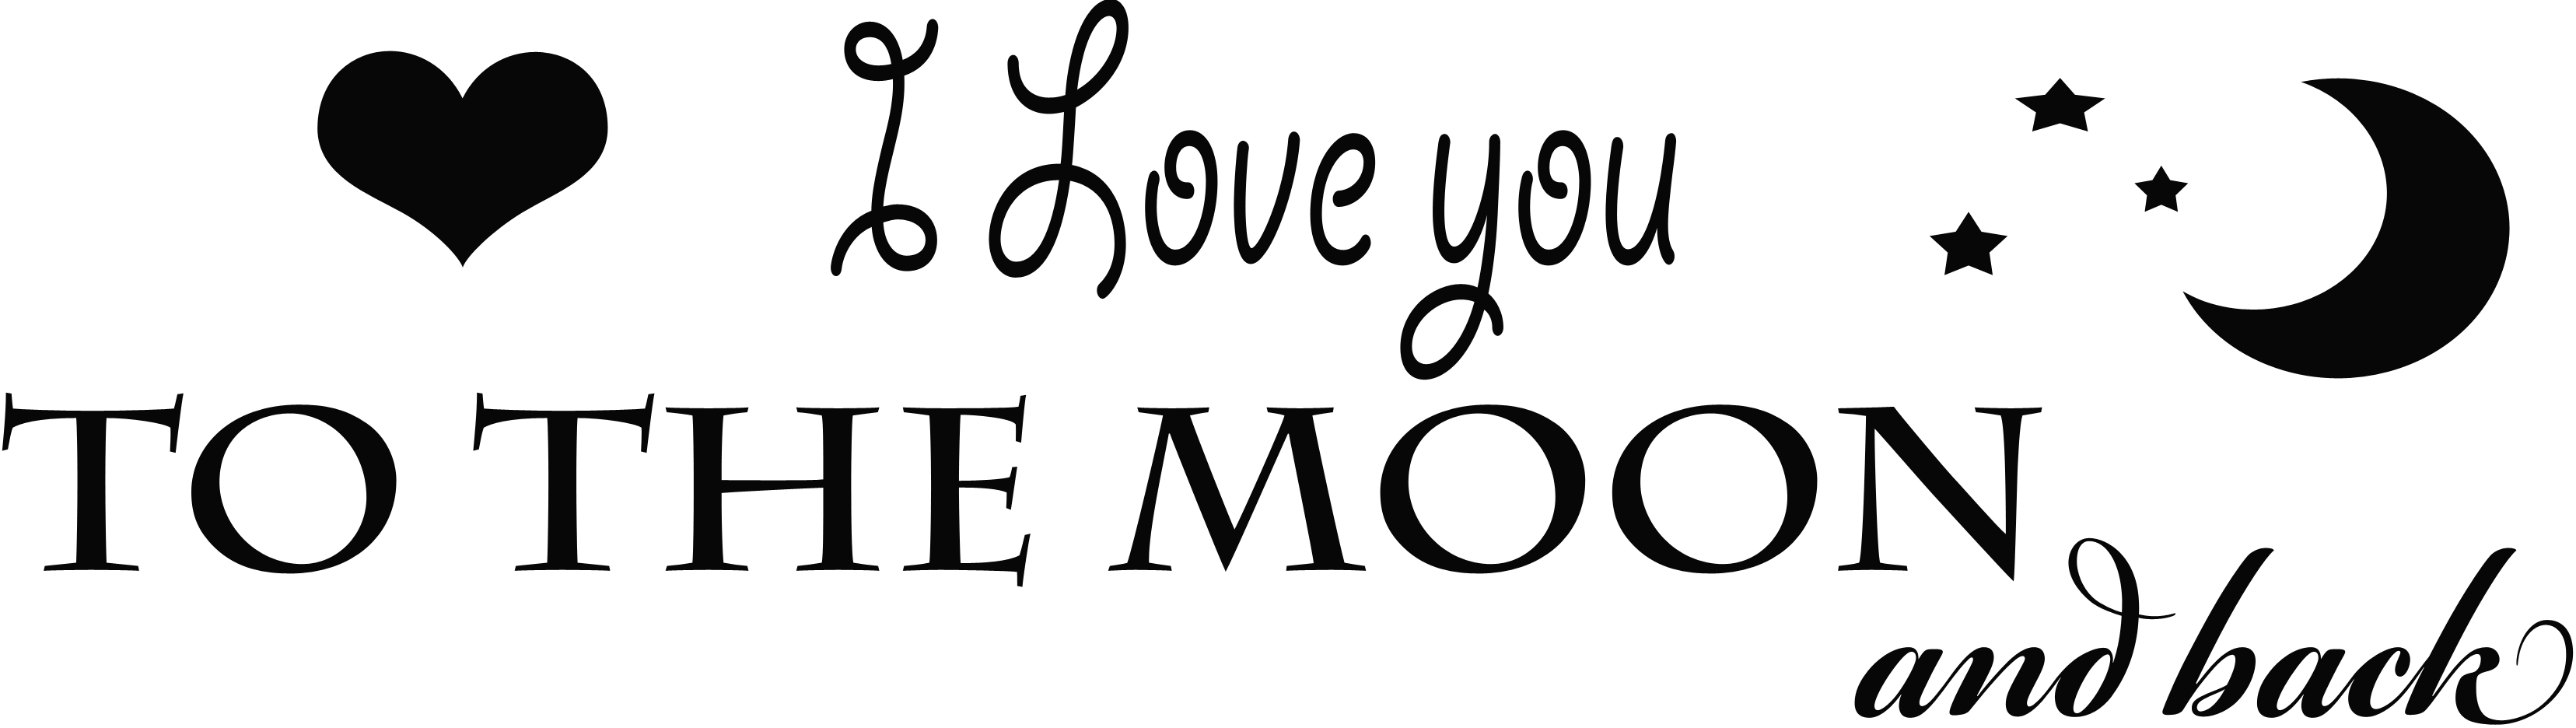 أحبك إلى القمر والظهر PNG صورة شفافة